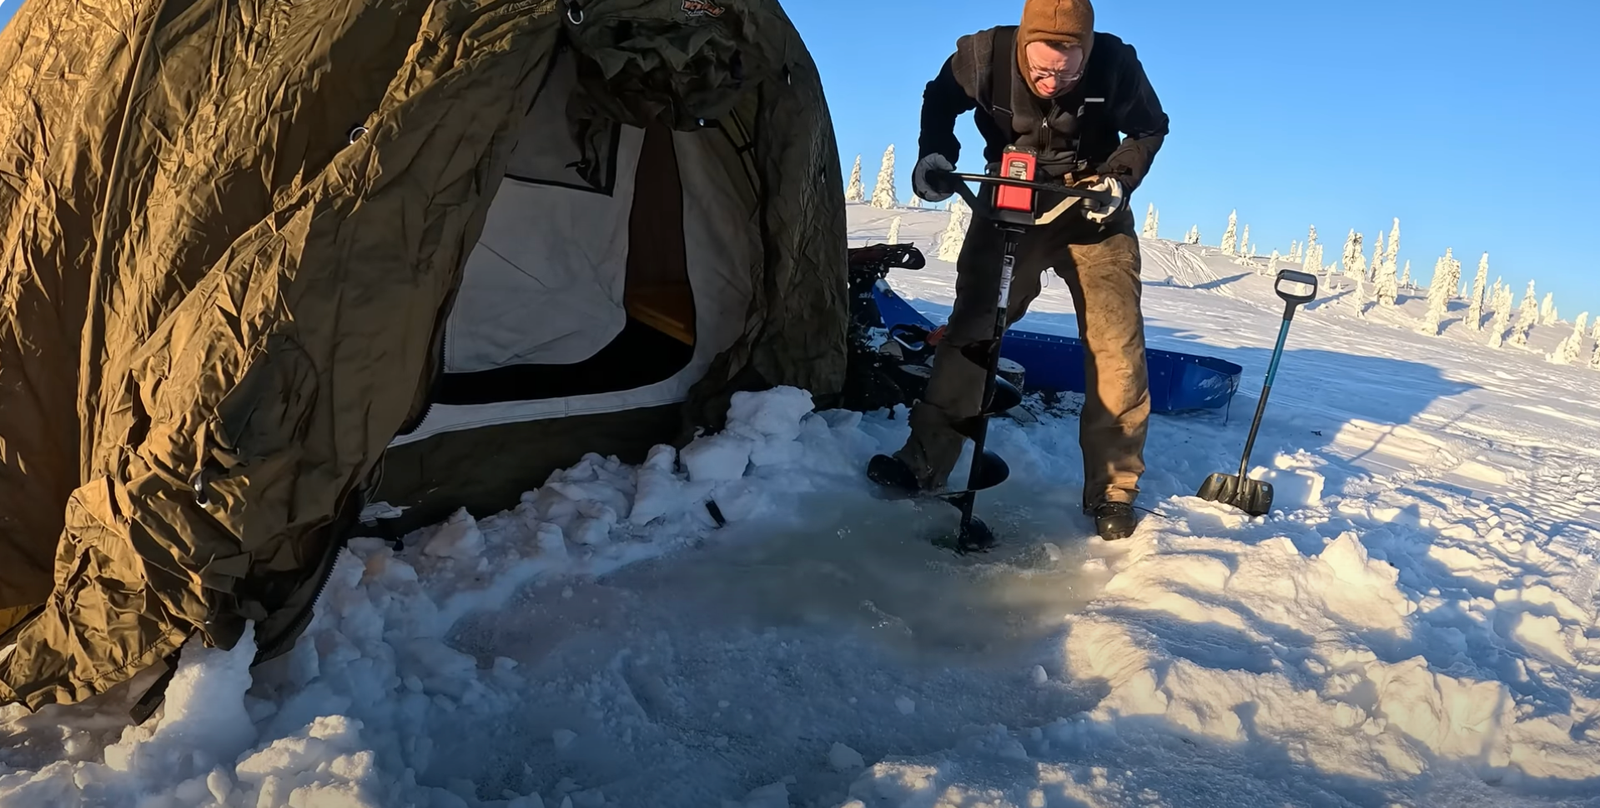 Alaska camping at -23 degree temperature